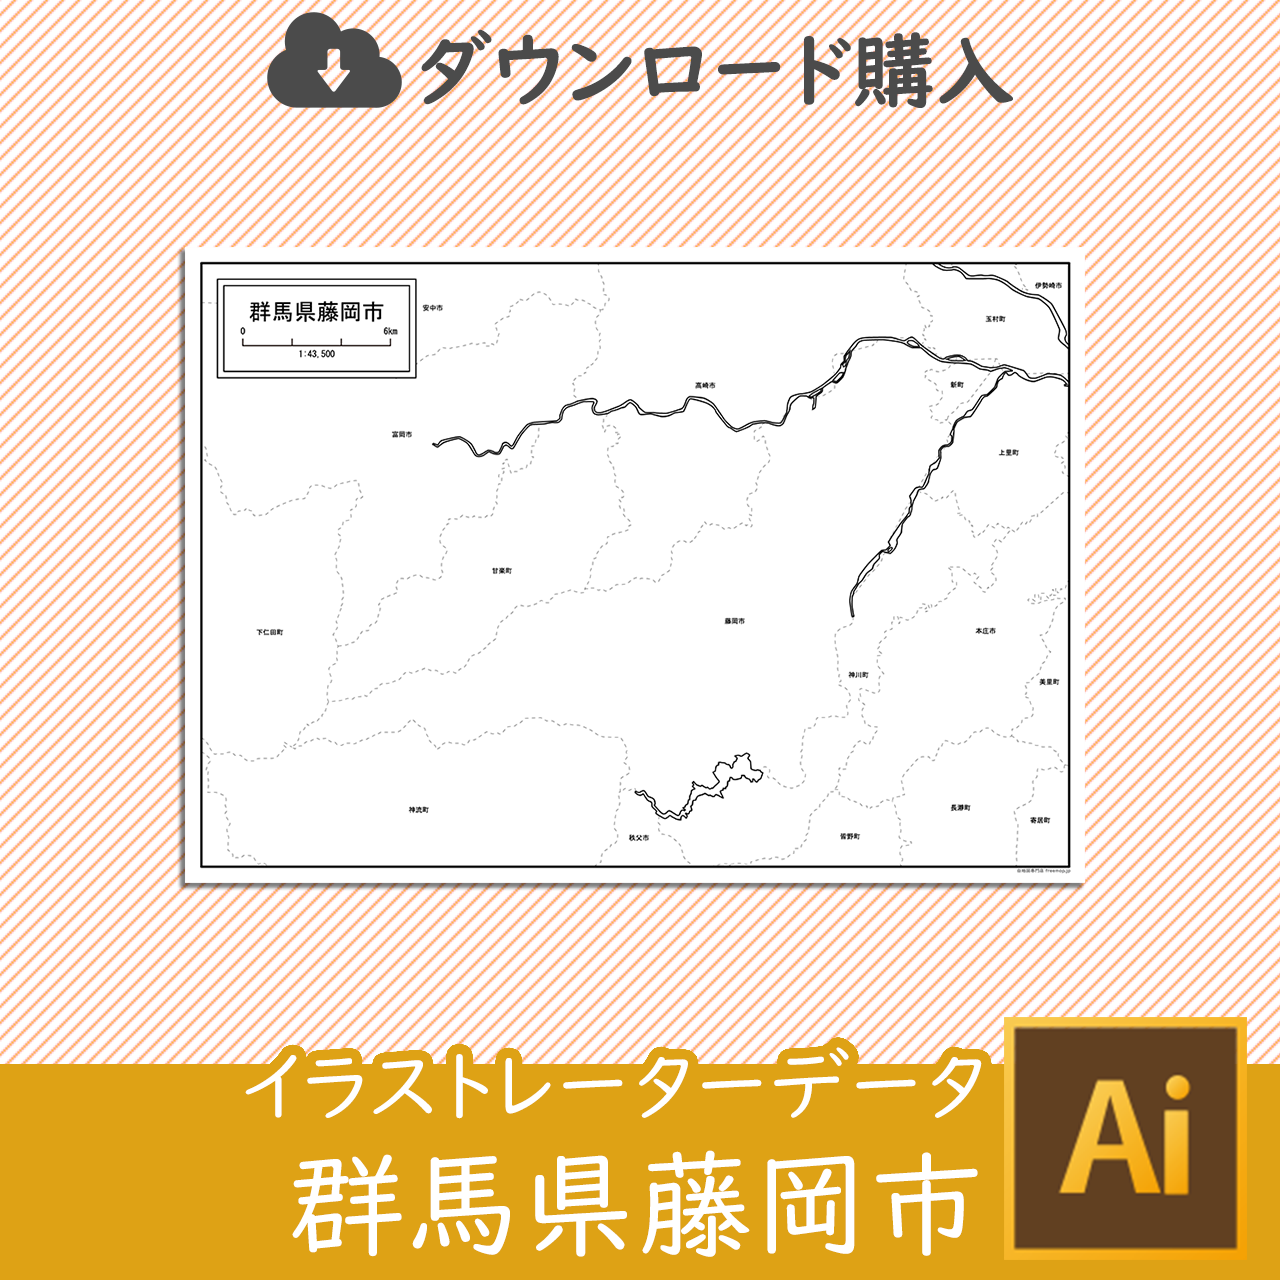 藤岡市のaiデータのサムネイル画像